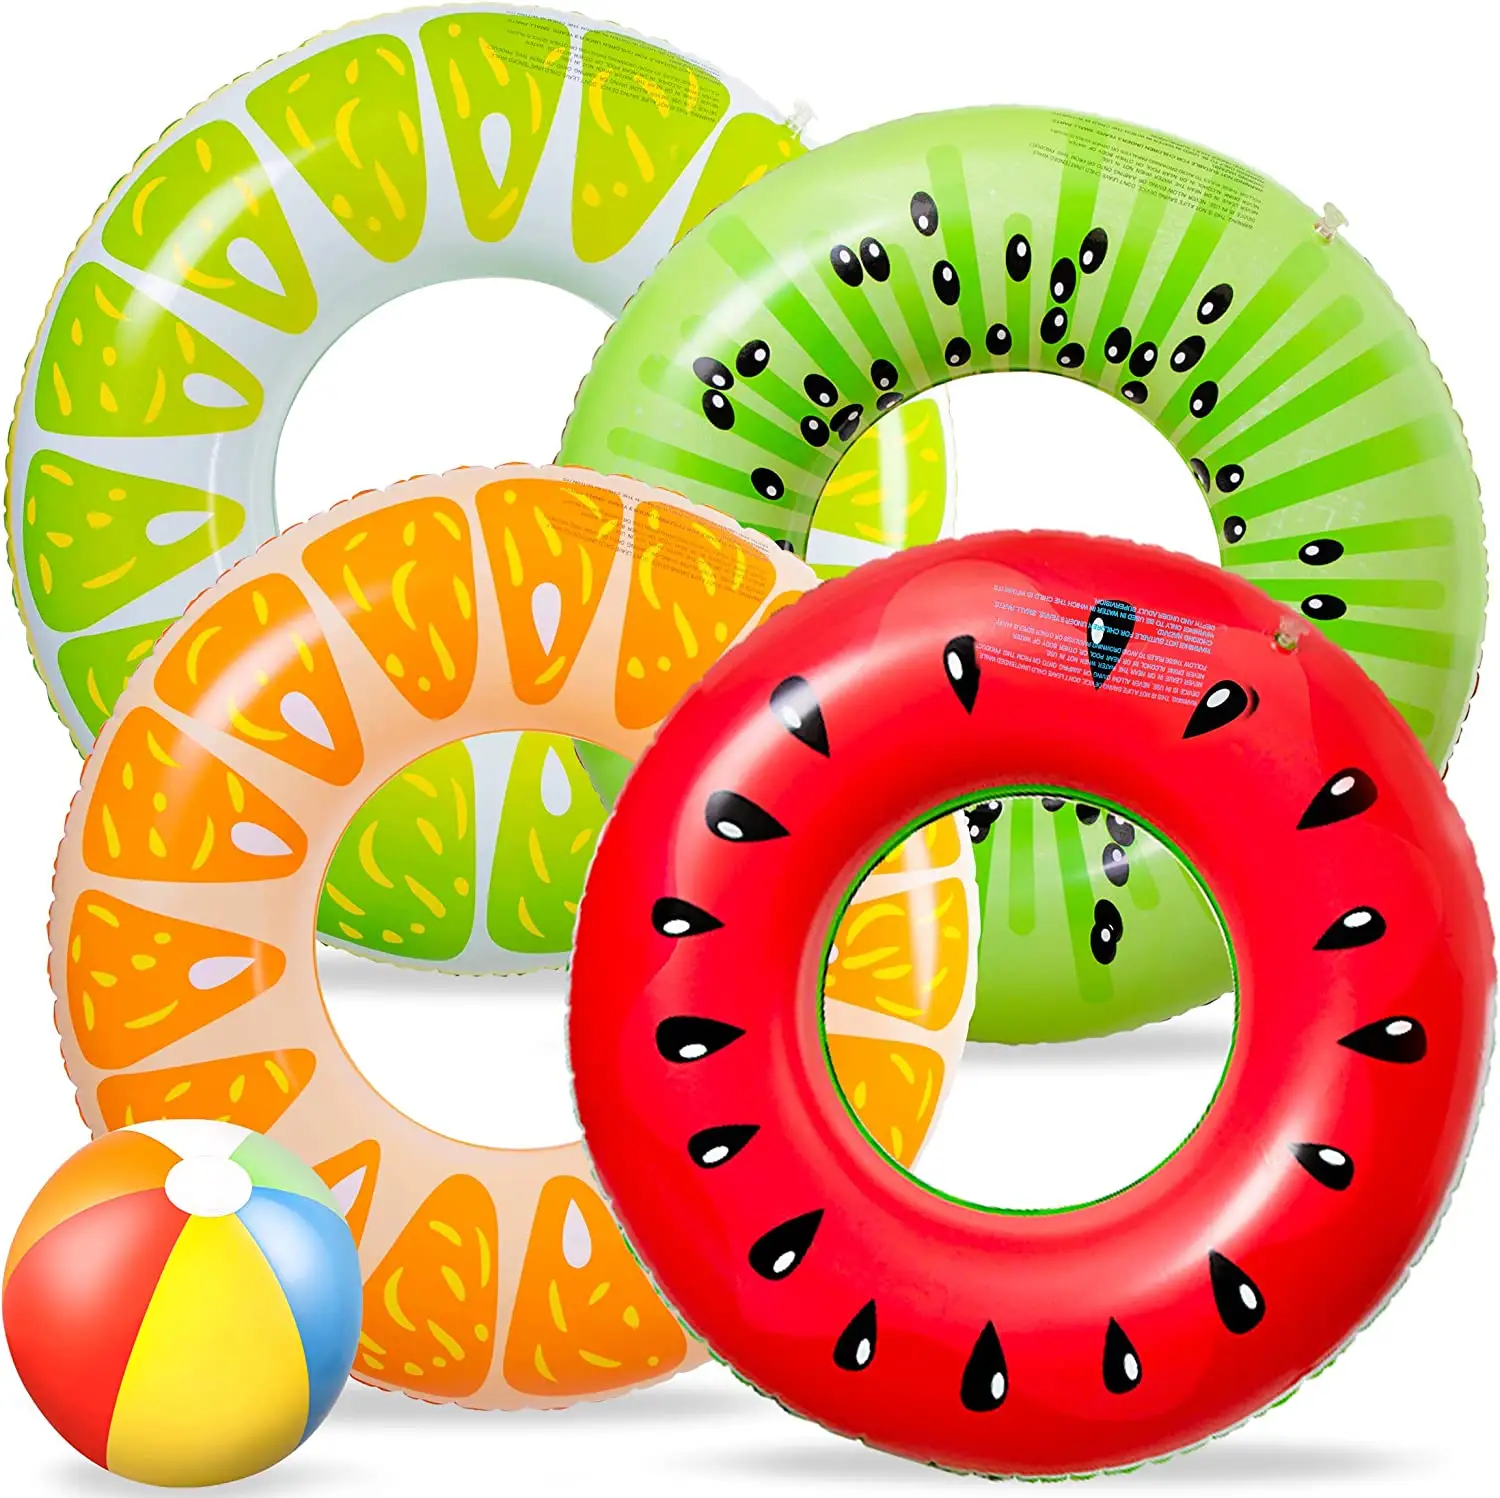 Venta al por mayor piscina de frutas flotadores anillos de natación tubos inflables divertidos juguetes de agua para niños adultos playa fiesta al aire libre